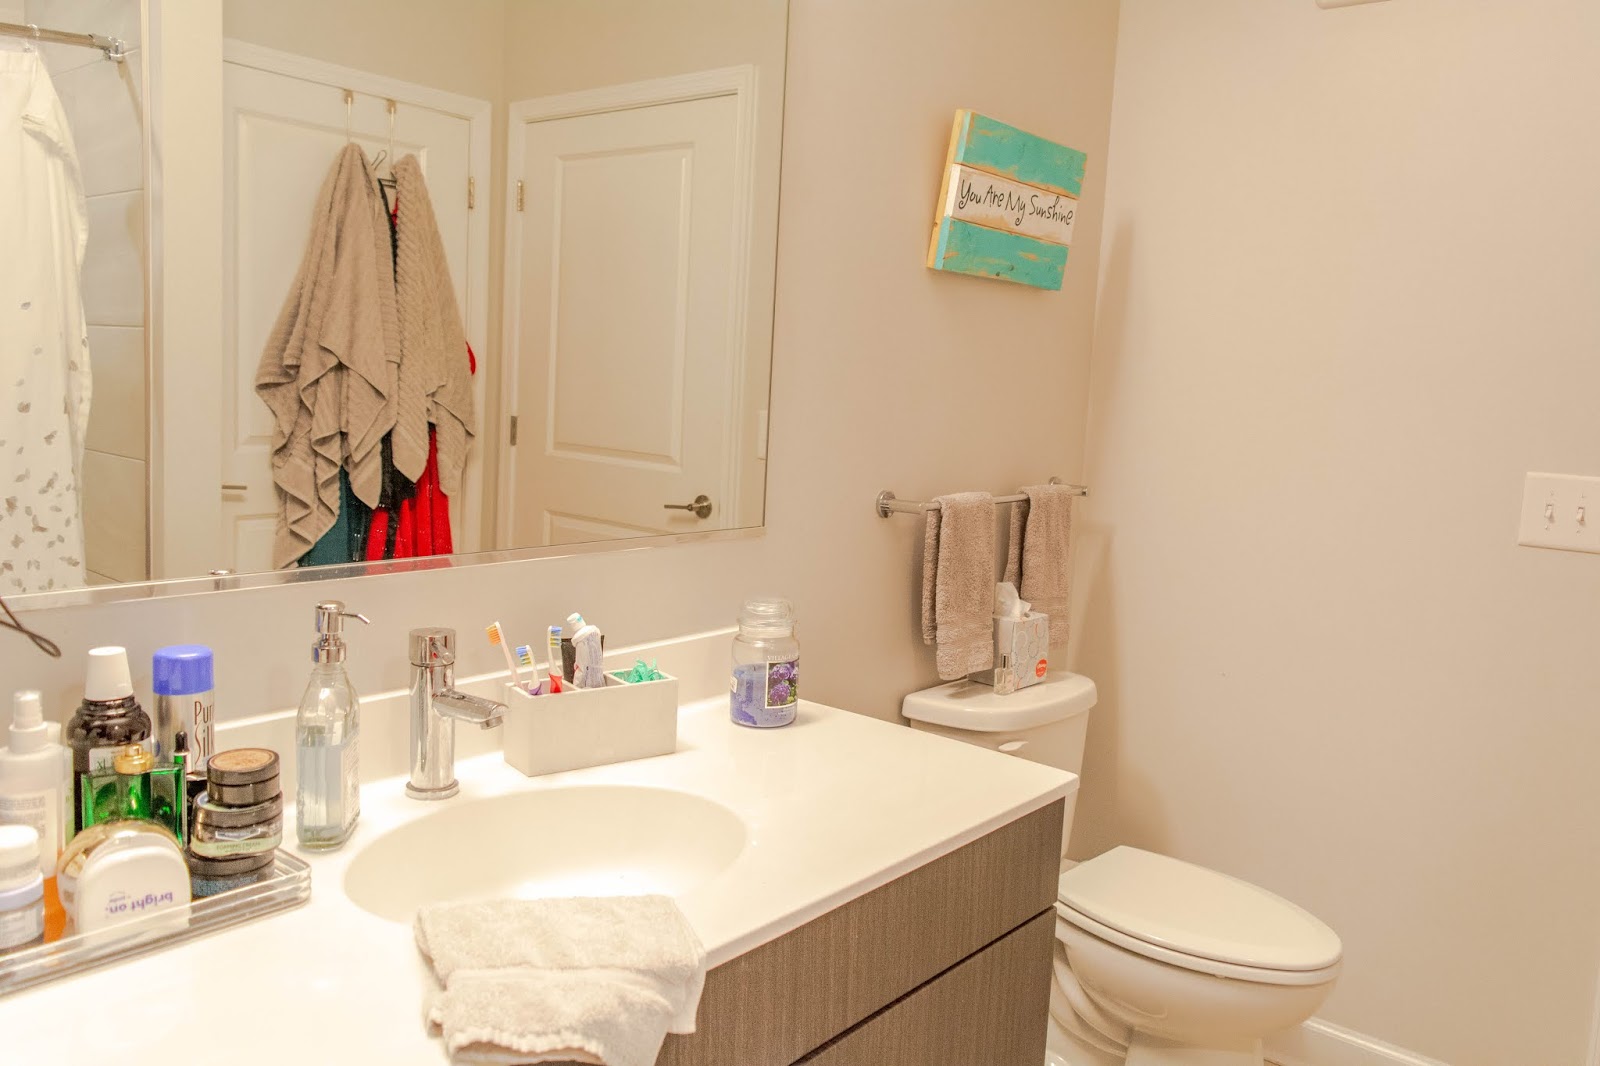 Falls Church Apartment Tour: Bedroom, Bathroom & Closet